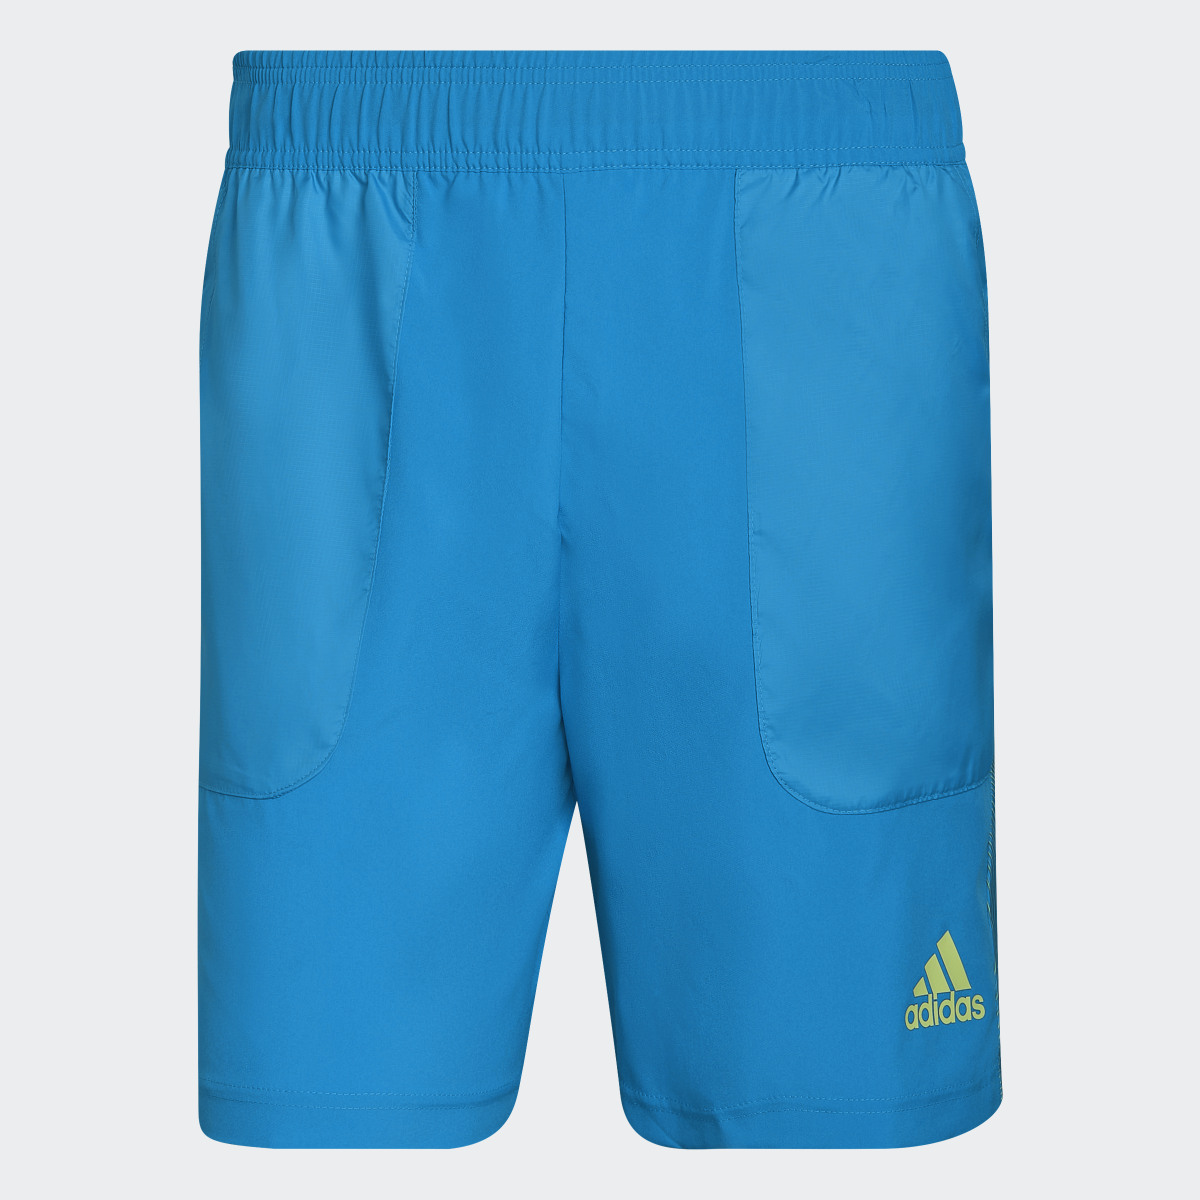 Adidas AEROREADY Seasonal Special Shorts. 4